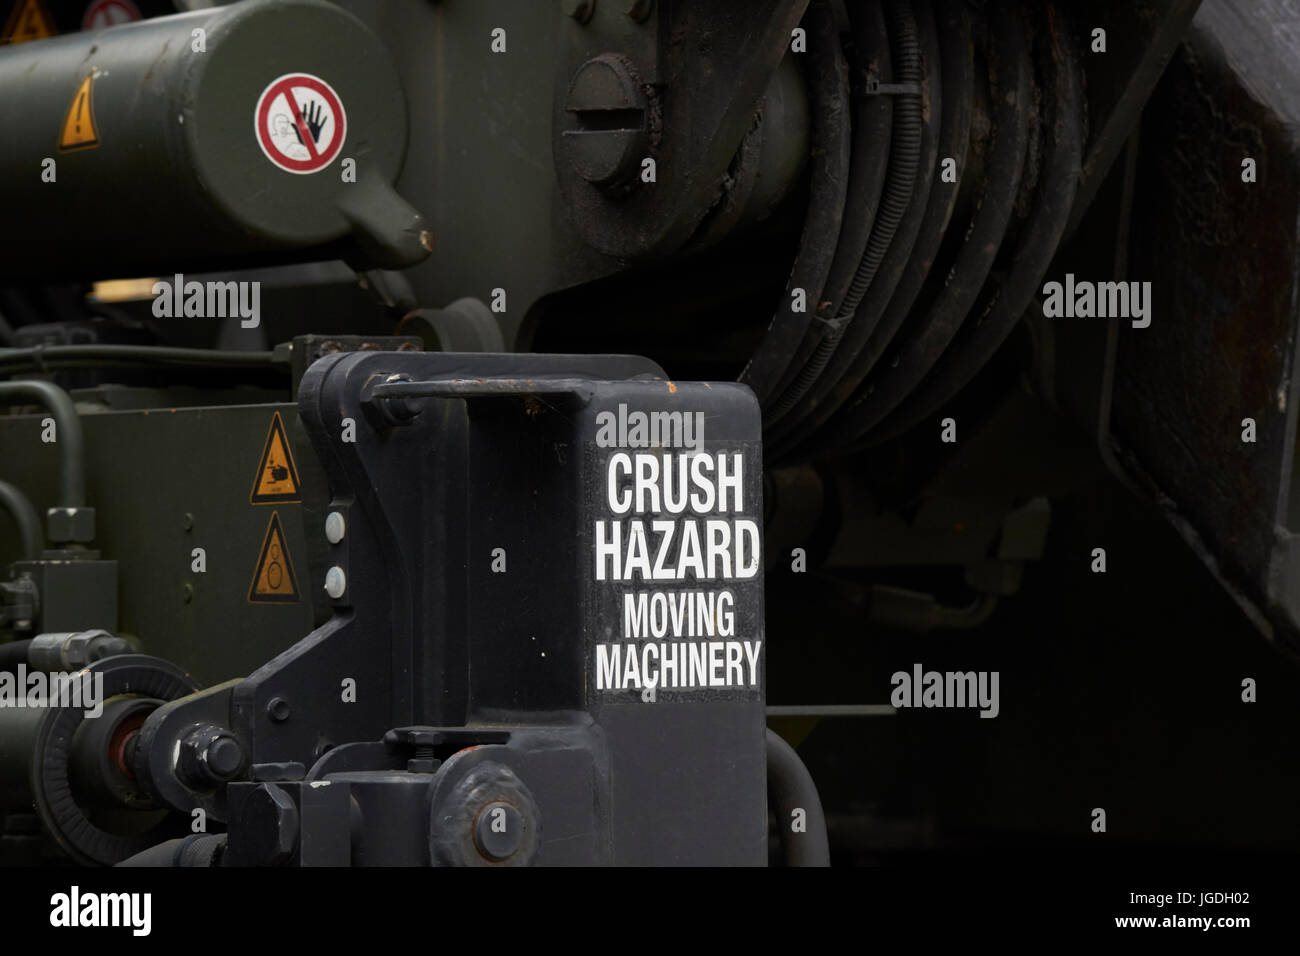 Crush Gefahr bewegten Maschinen Warnung beachten Sie britische Armee Fahrzeug uk Schwergut Stockfoto